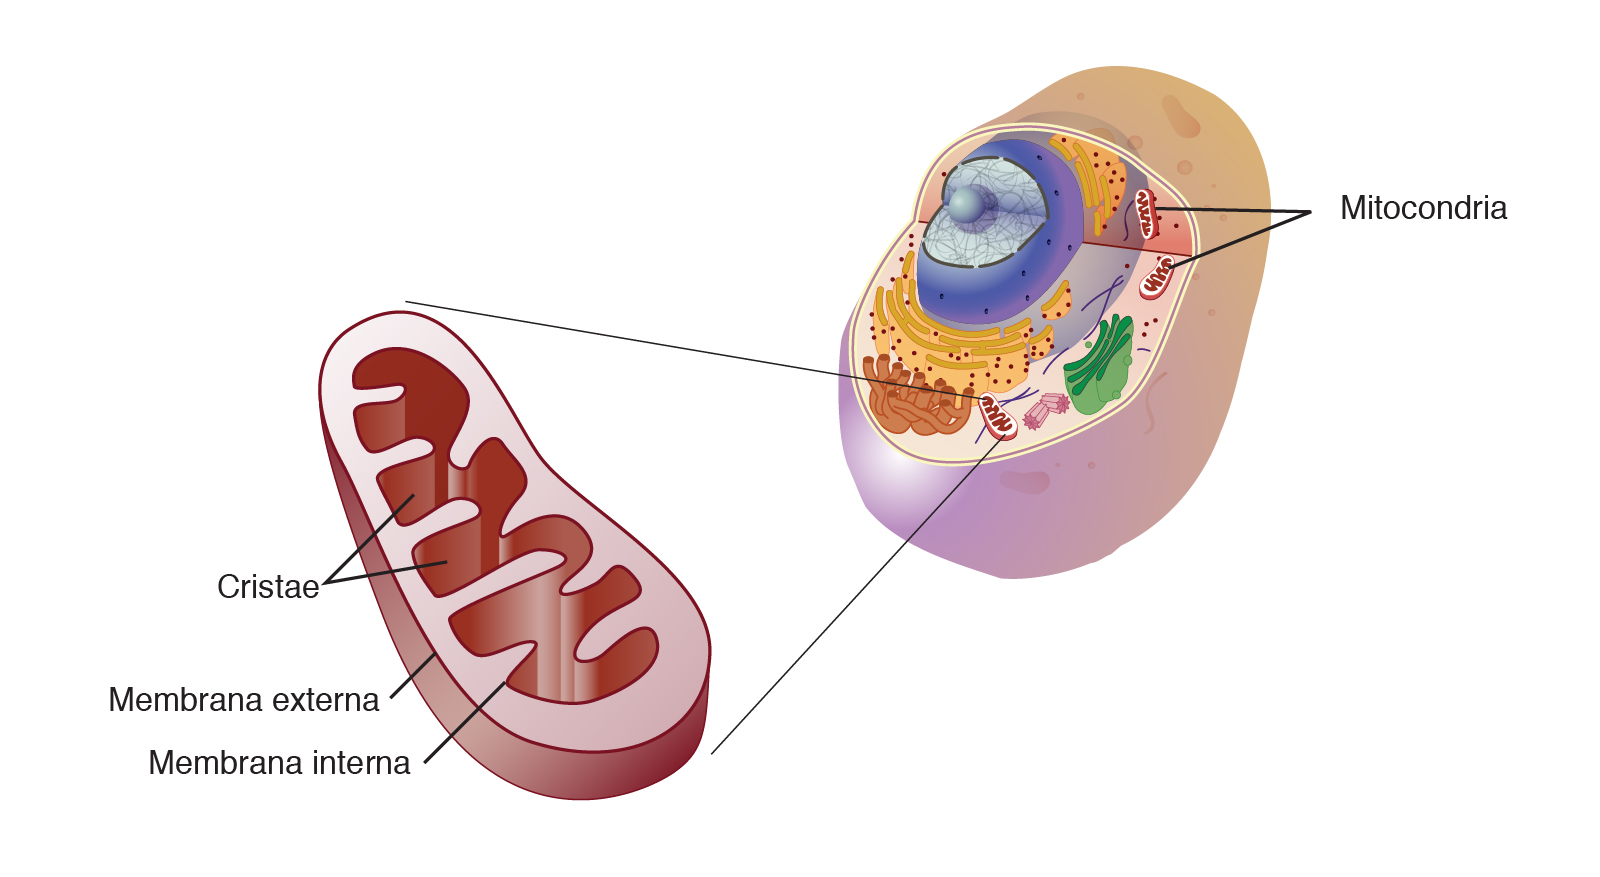 ¿Qué célula tiene más mitocondrias vegetal o animal?